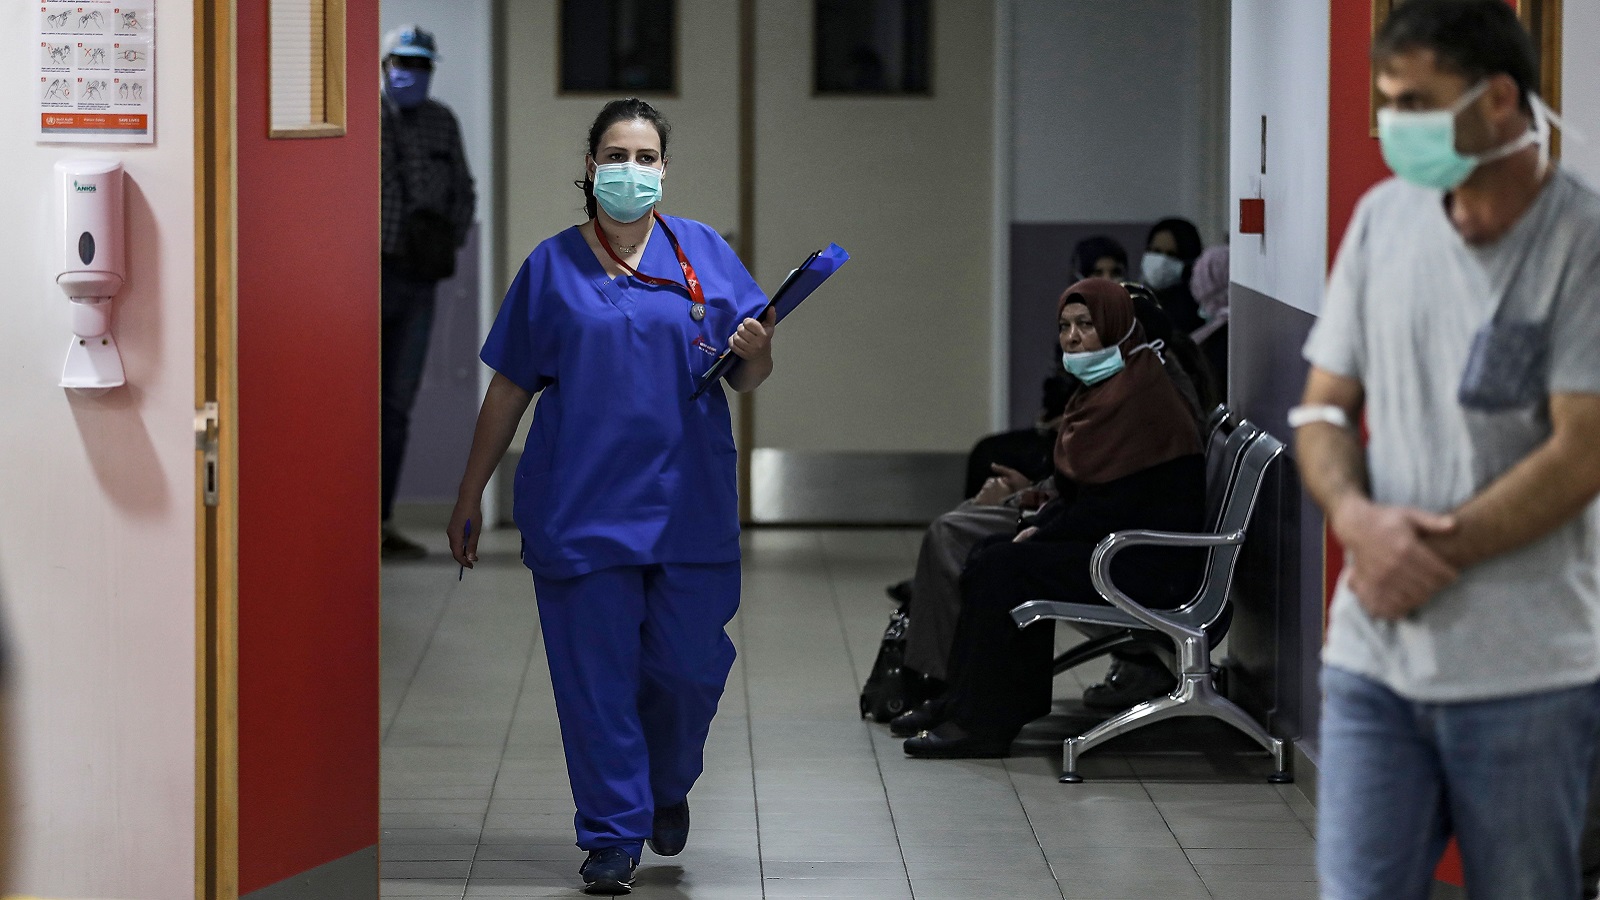 الليلة الواحدة بـ120 ألف ليرة: المستشفيات أمام سيناريو مرعب